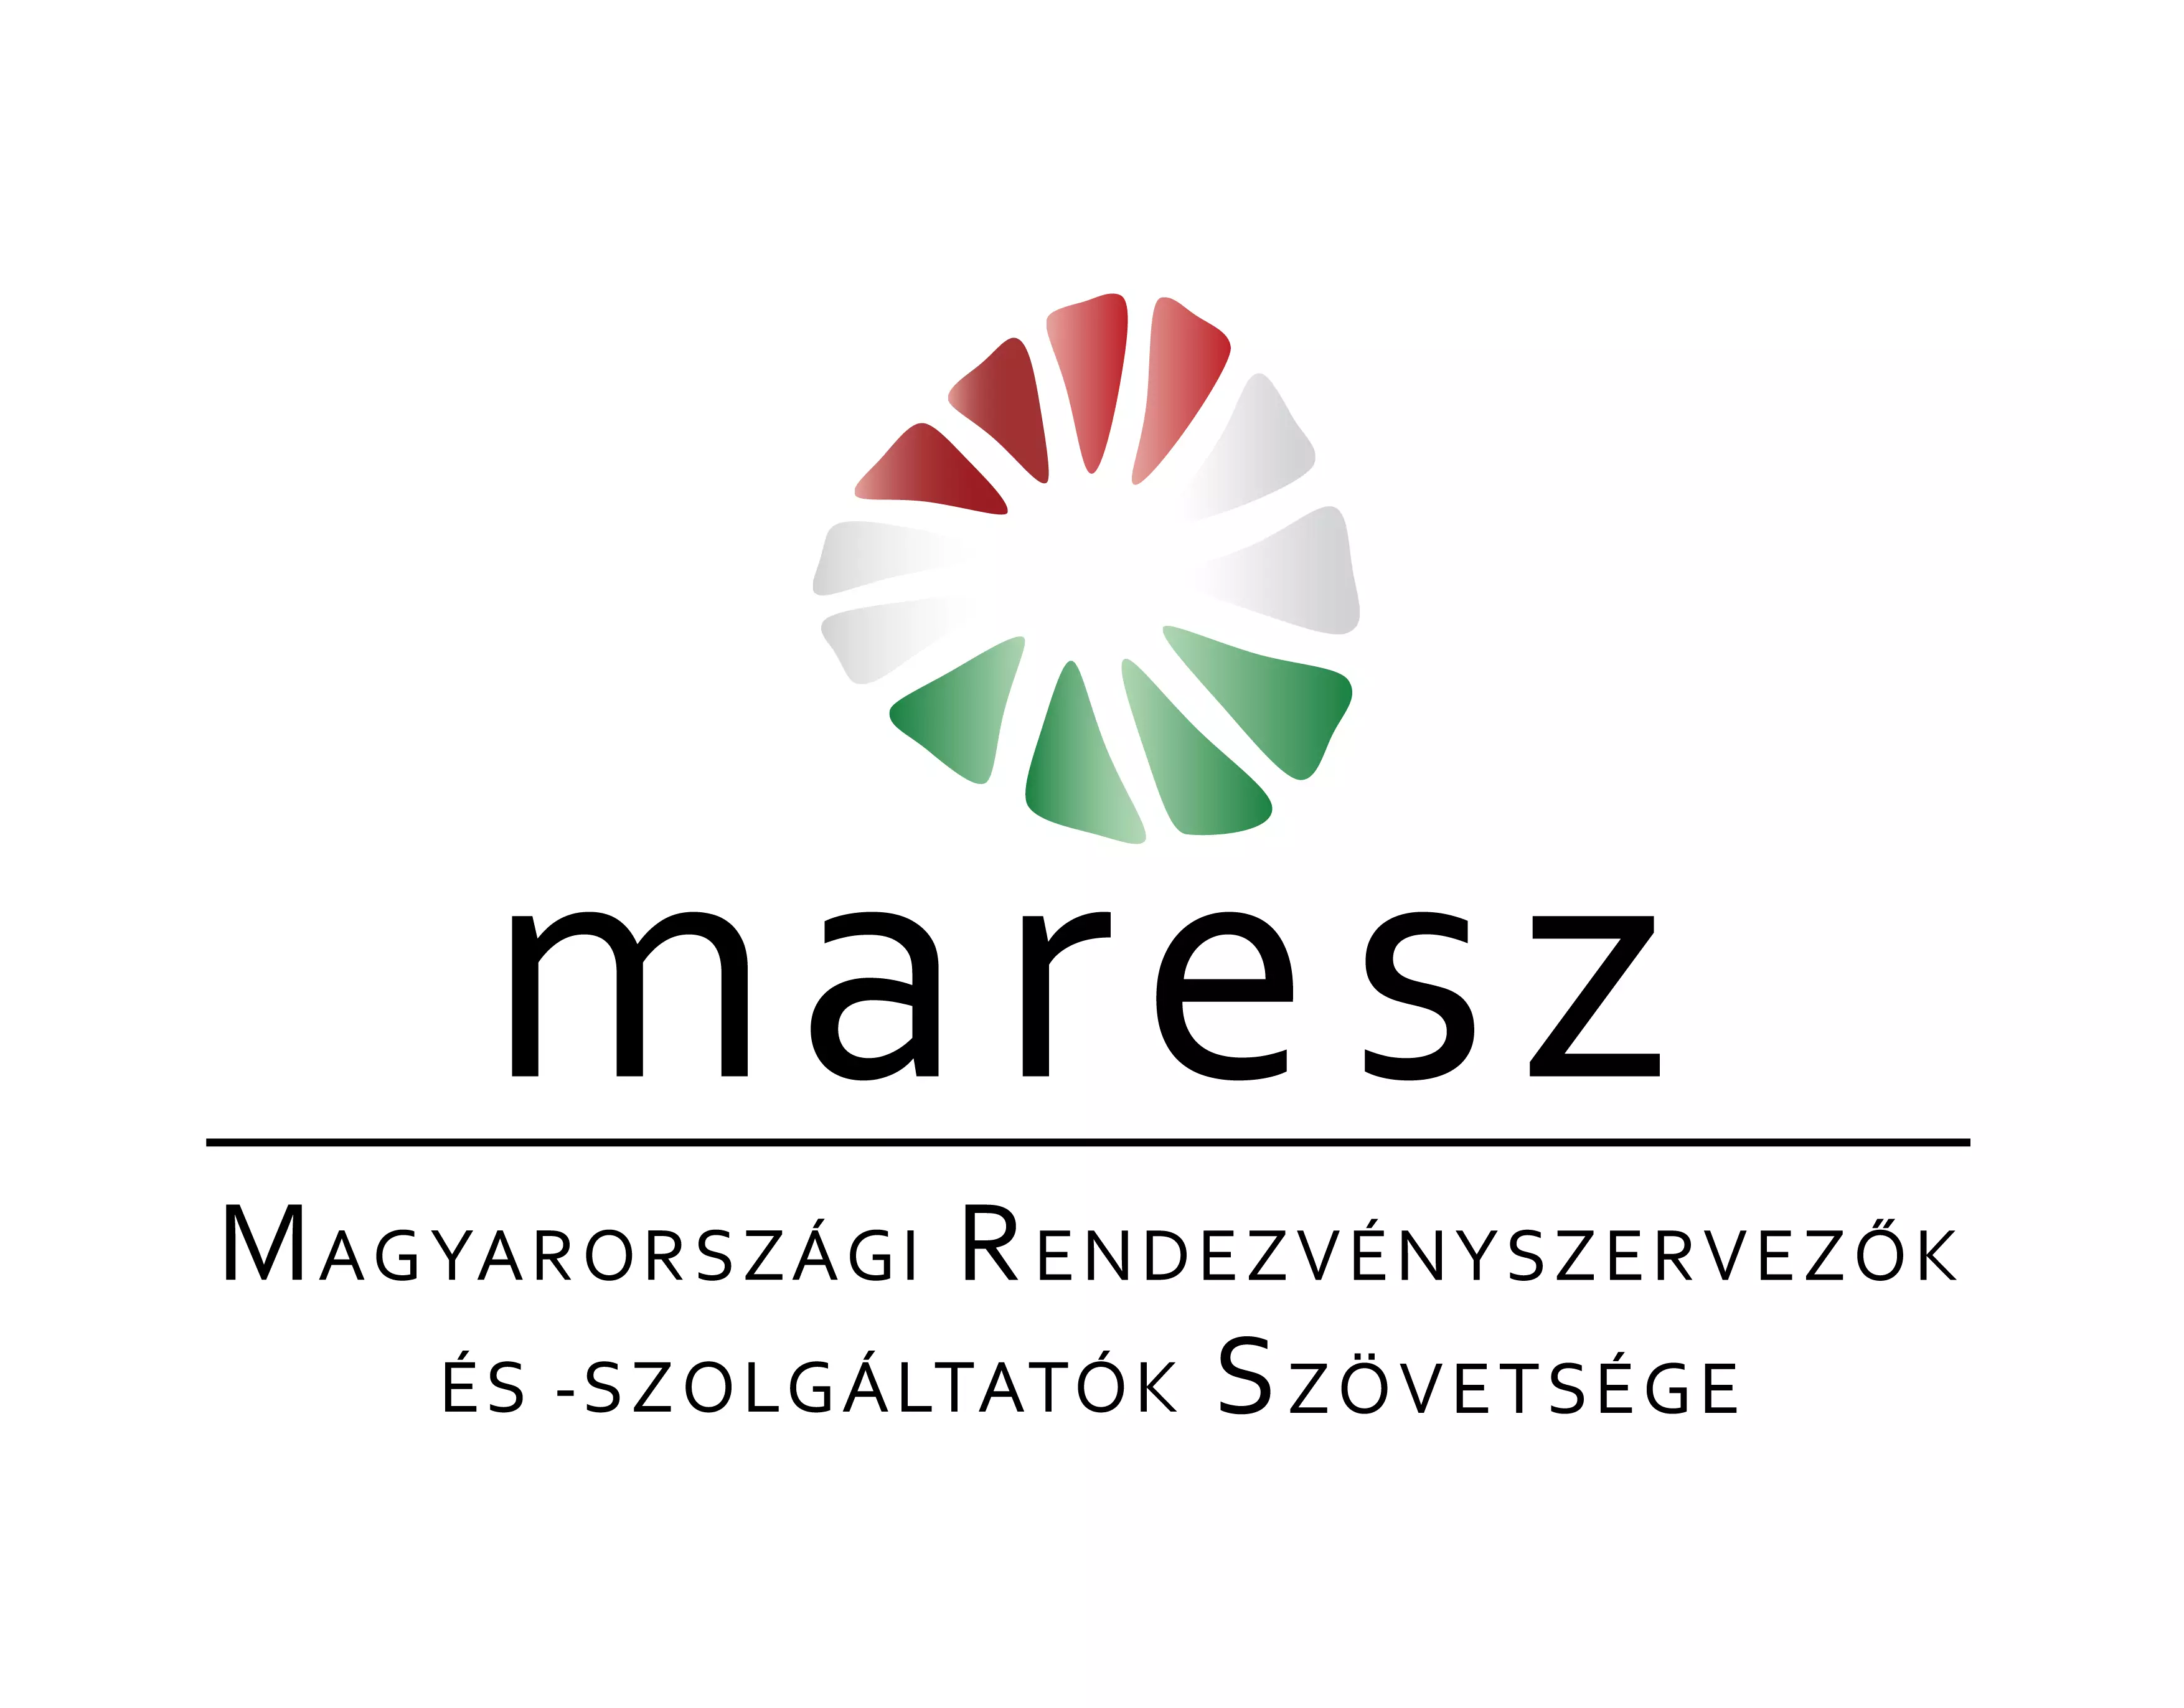 Magyarországi Rendezvényszervezők és - Szolgáltatók Szövetsége